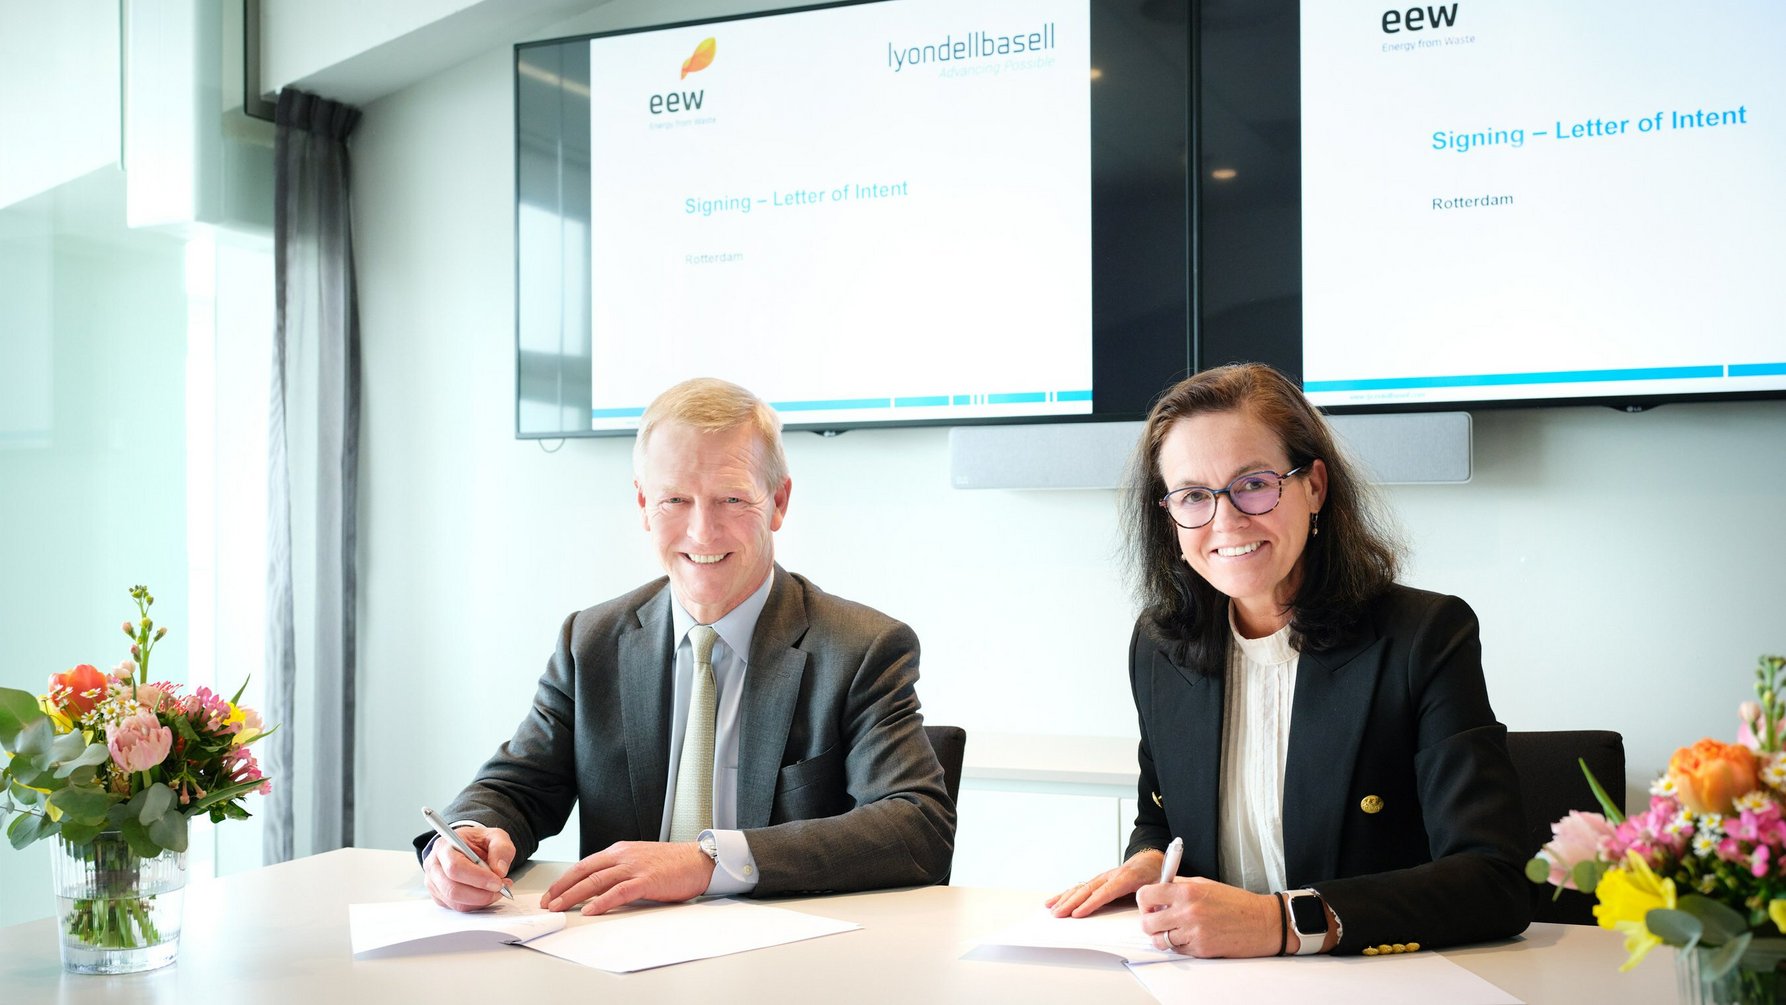 Bernard M. Kemper and Yvonne van der Laan unterzeichnen den Letter of Intent